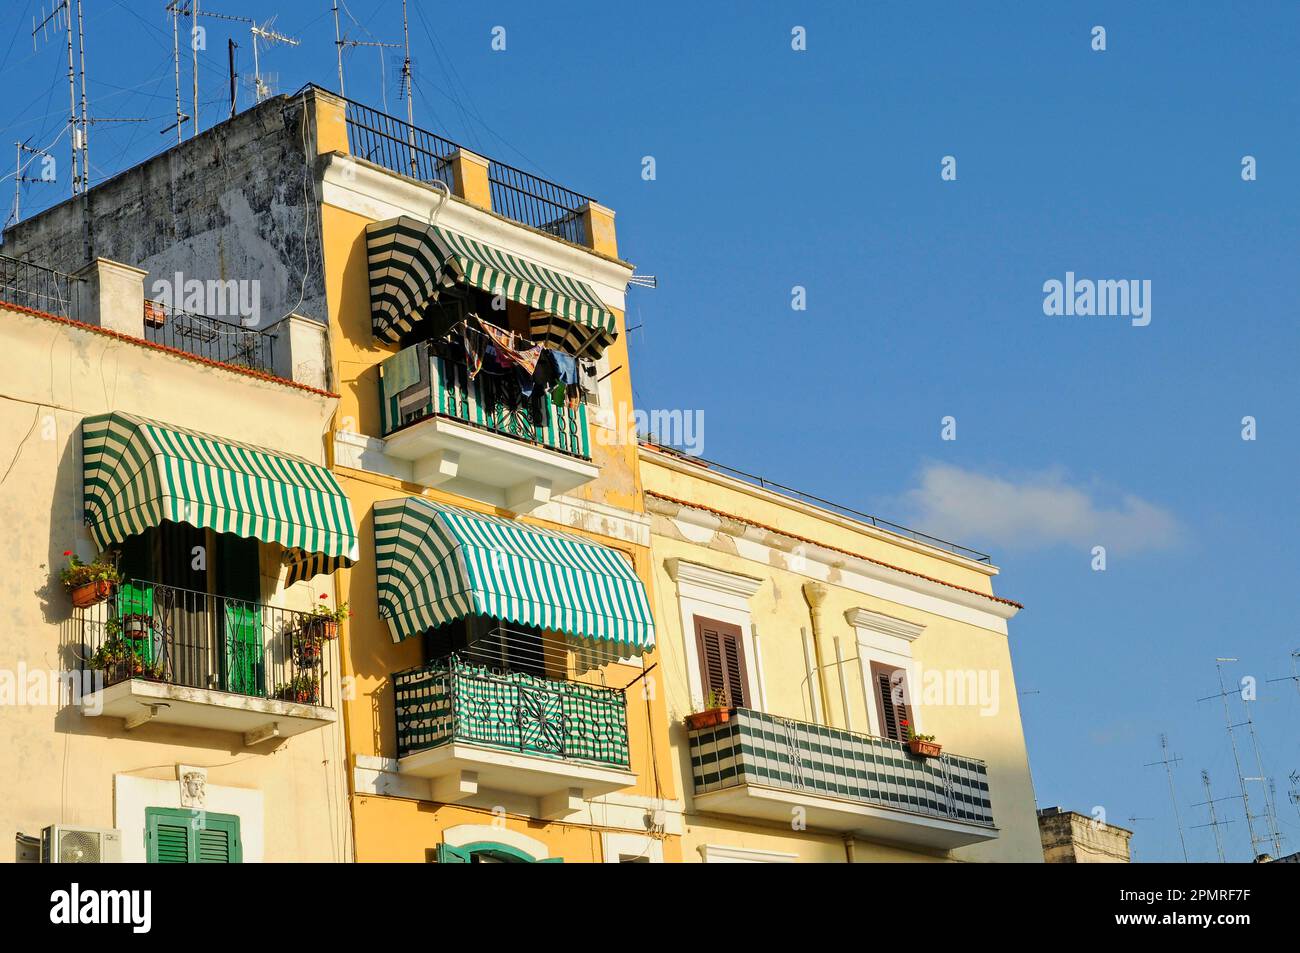 House facades, Bari Vecchia, historic city, Bari, Puglia, Italy Stock Photo